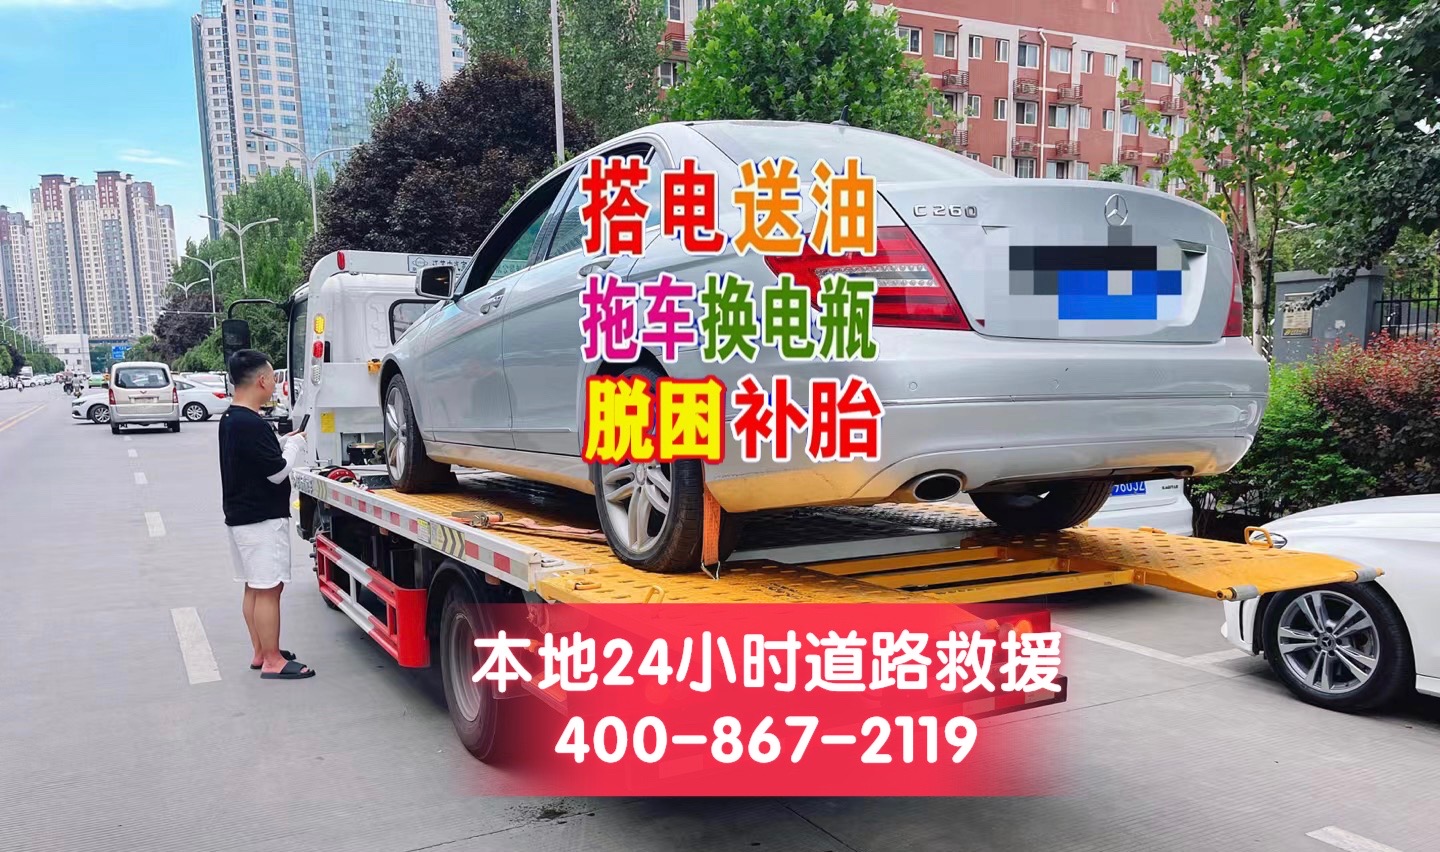 杭州市24小时道路救援公司,专业为您提供各类汽车救援服务